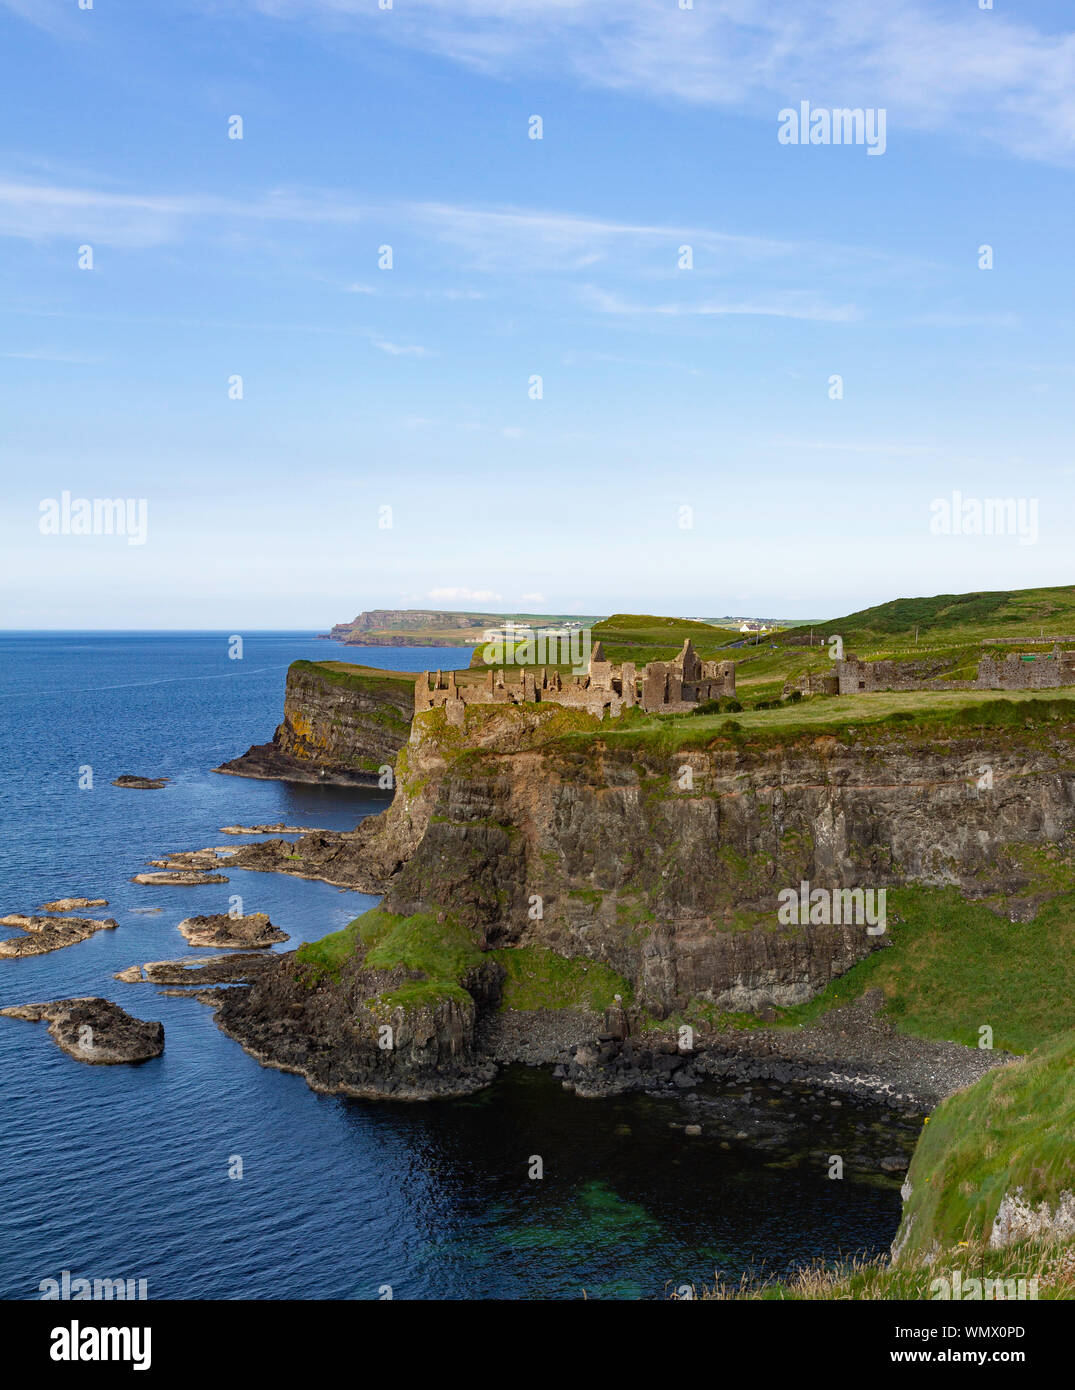 Desde el oeste, mirando al oriente en las ruinas del Castillo de Dunluce, situada en la costa atlántica de Irlanda del Norte. Foto de stock